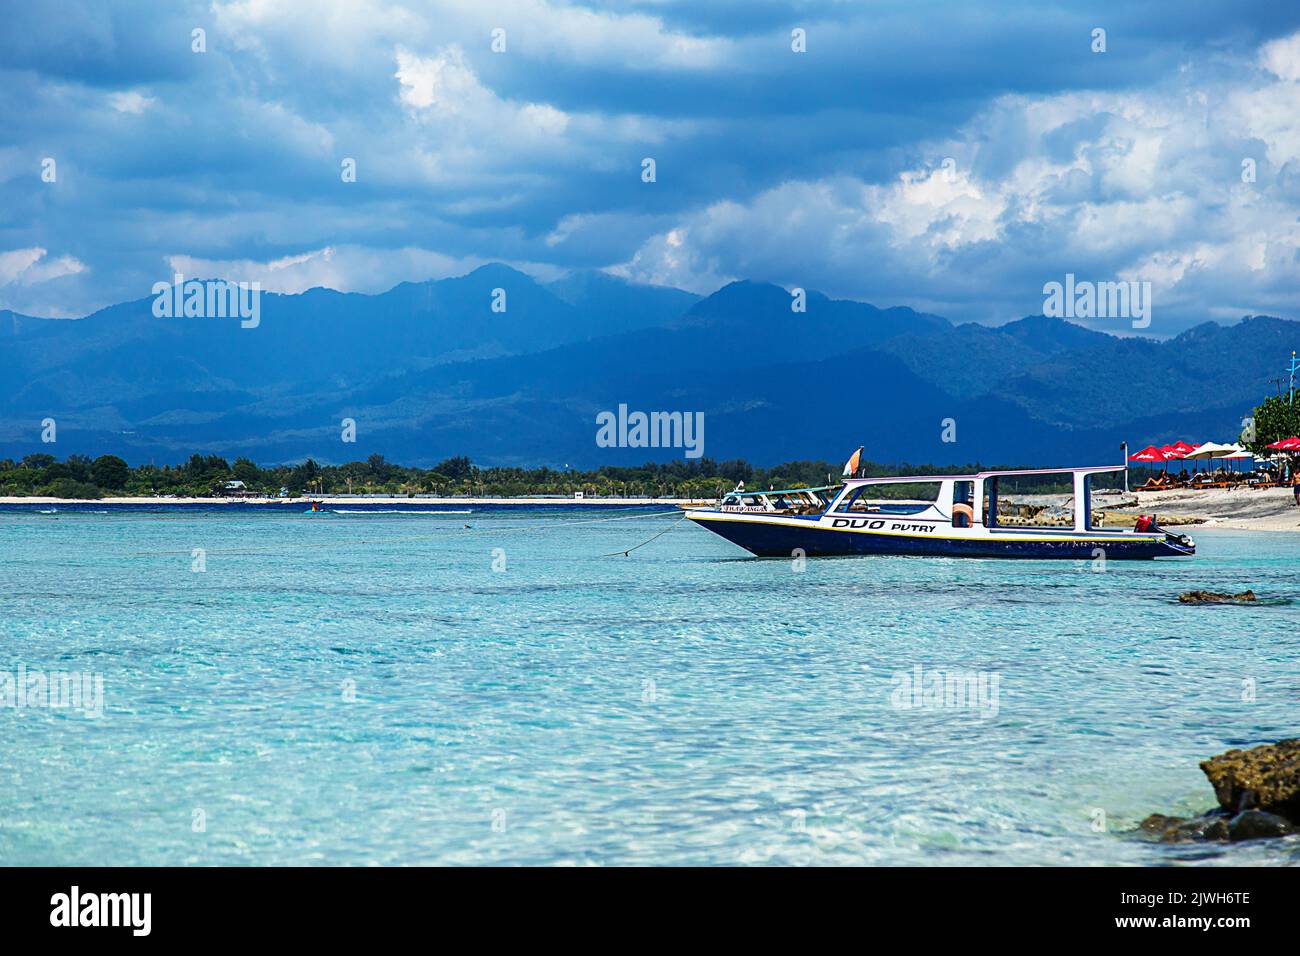 Bootstouren auf einem klaren und ruhigen türkisfarbenen Meer mit Wolken und Bergen im Hintergrund. Asiatisches Paradies Stockfoto